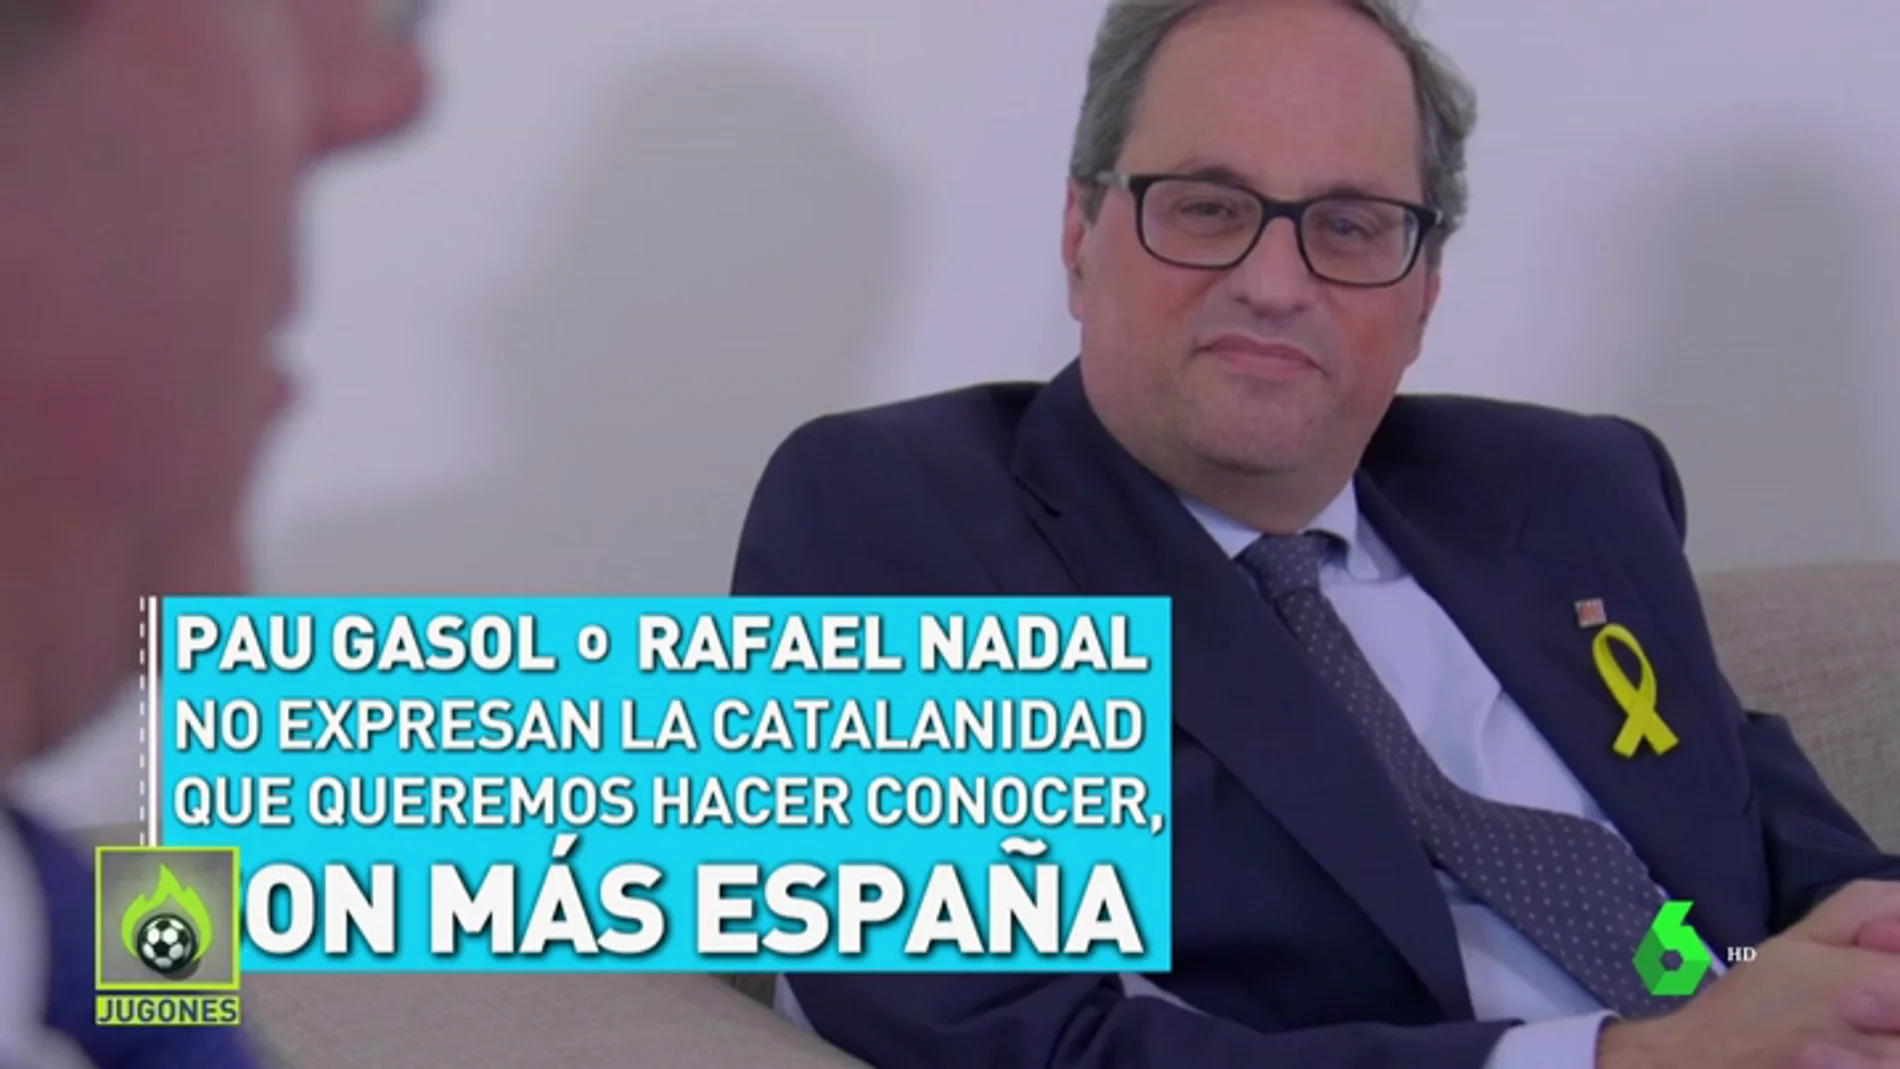 Quim Torra: "Pau Gasol o Rafa Nadal no reprensentan la catalanidad, son más España"